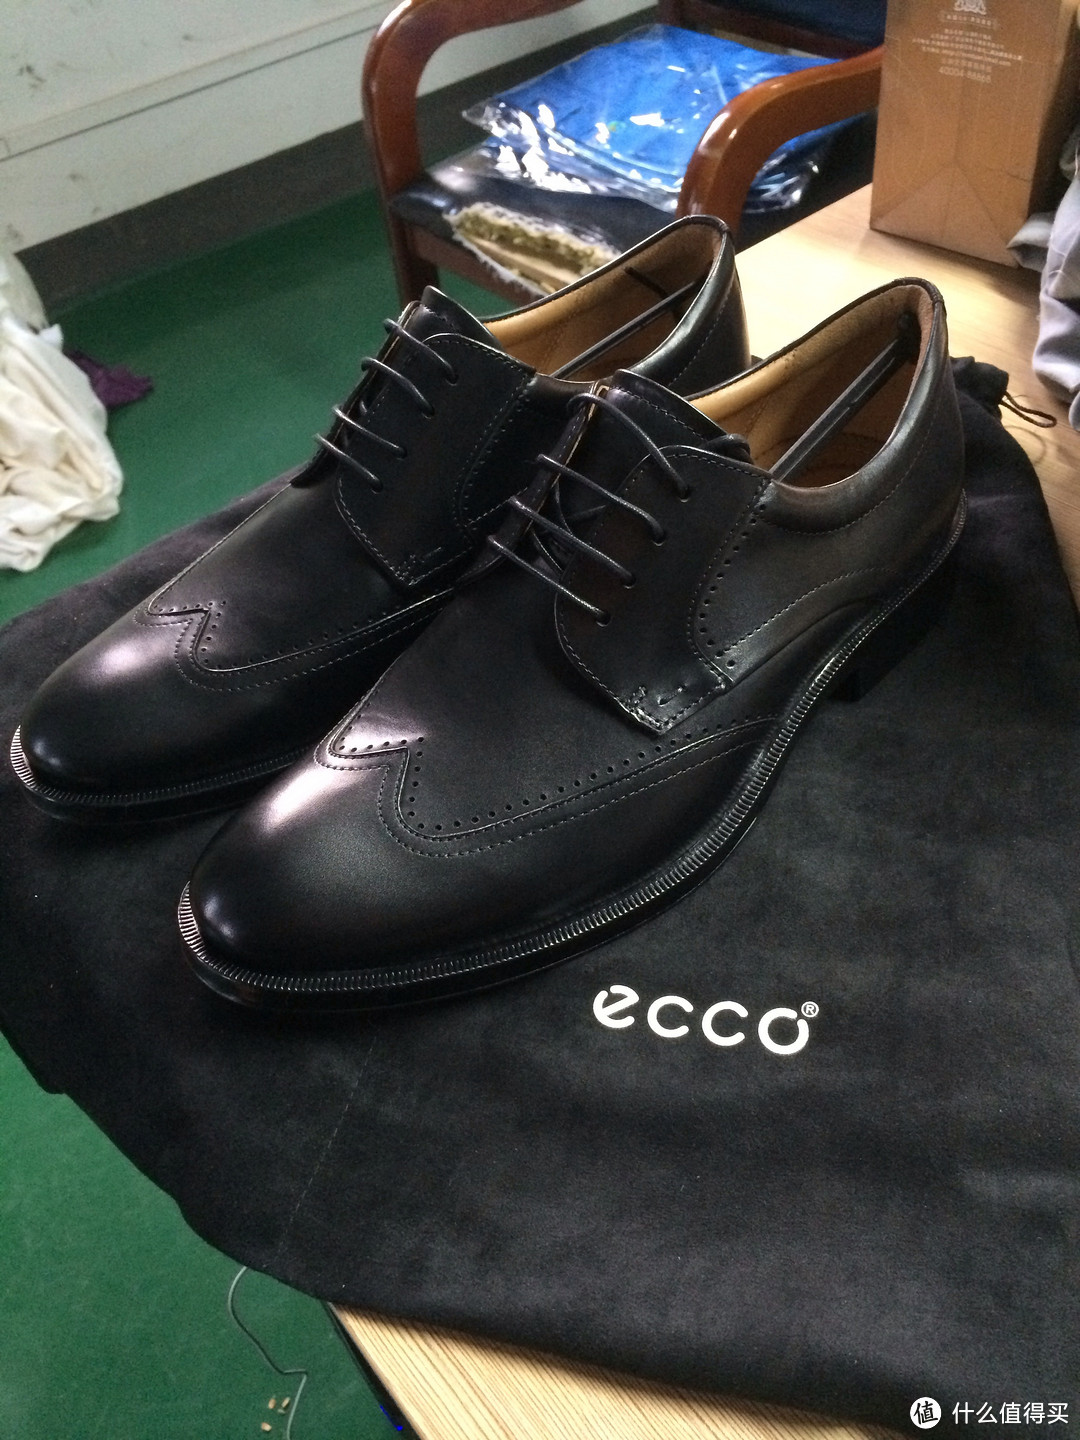 ECCO 爱步 赫尔辛基 050104  与 堪培拉 621504 两款男鞋的简单对比